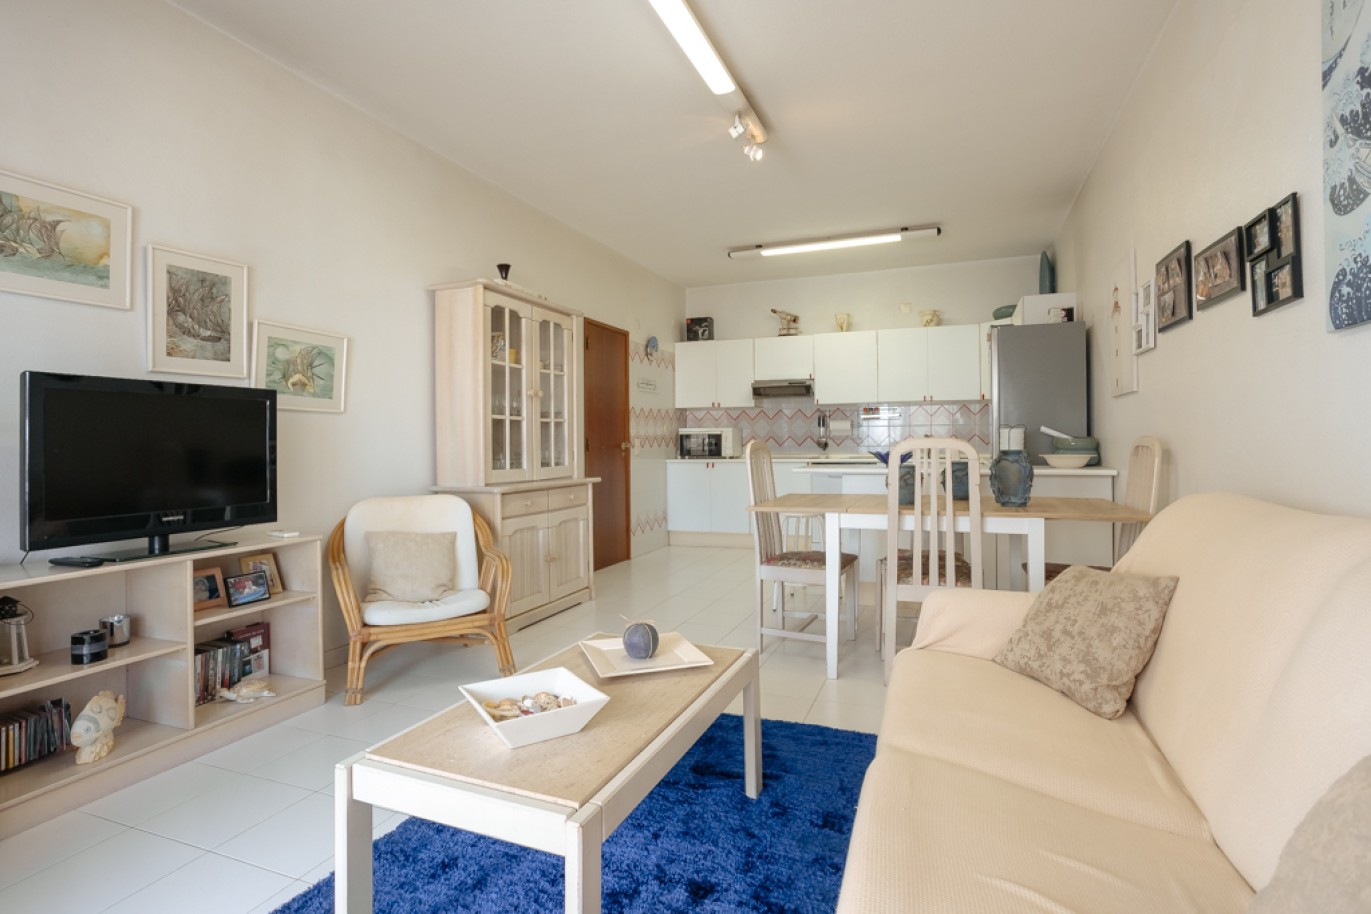 Apartamento com 1+1 quartos, com vista mar, para venda em Porches, Algarve_257023